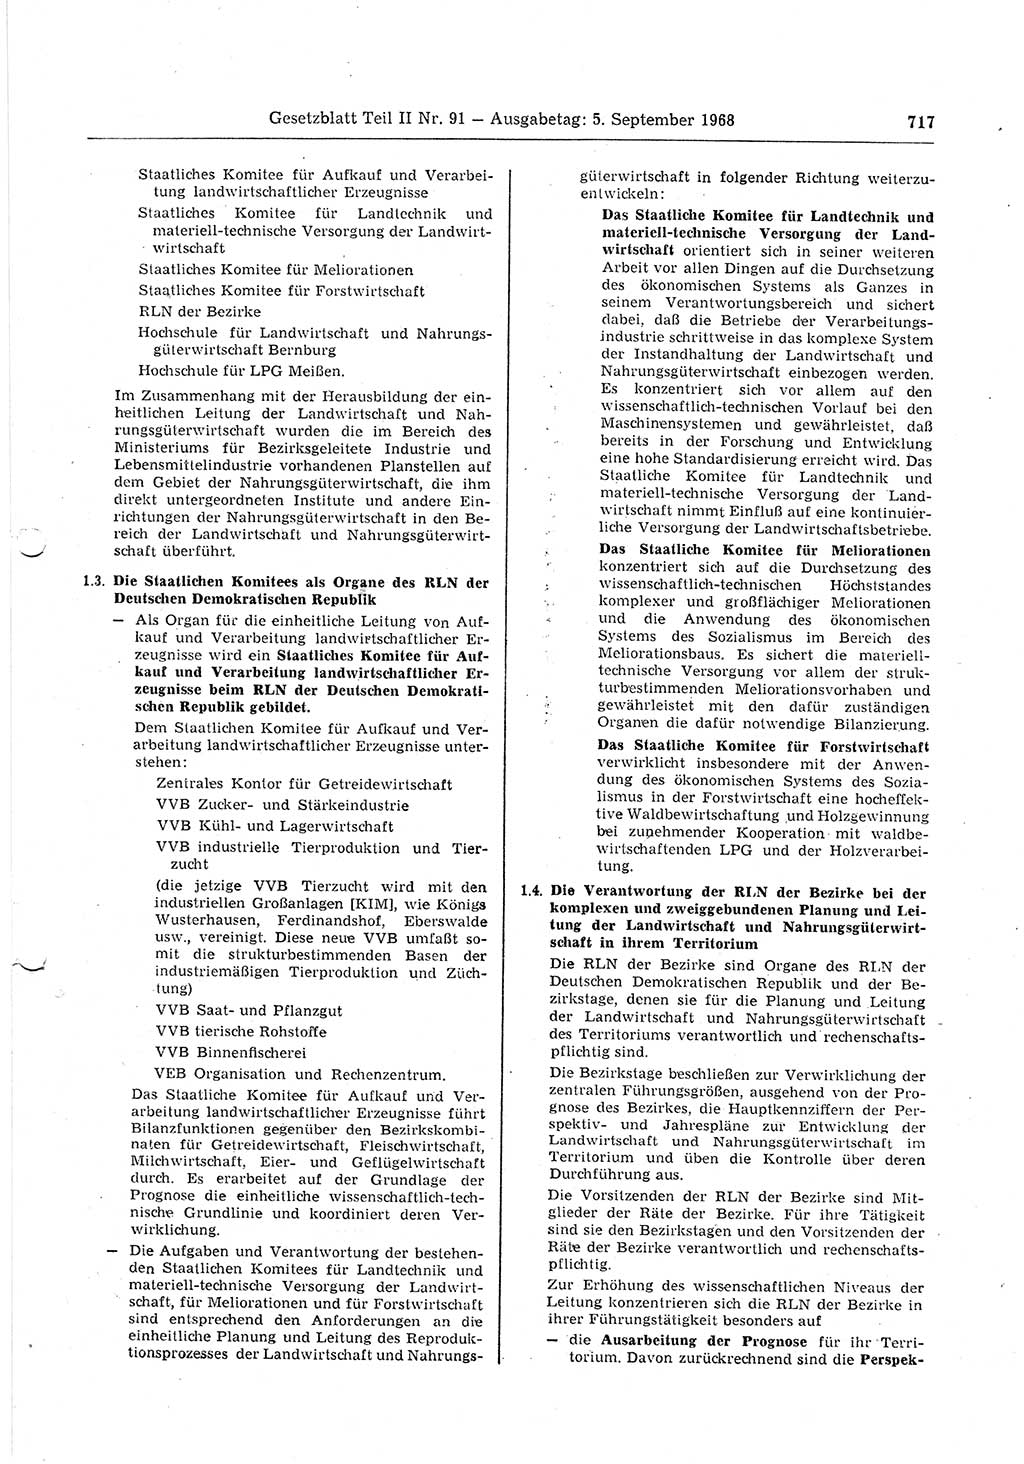 Gesetzblatt (GBl.) der Deutschen Demokratischen Republik (DDR) Teil ⅠⅠ 1968, Seite 717 (GBl. DDR ⅠⅠ 1968, S. 717)